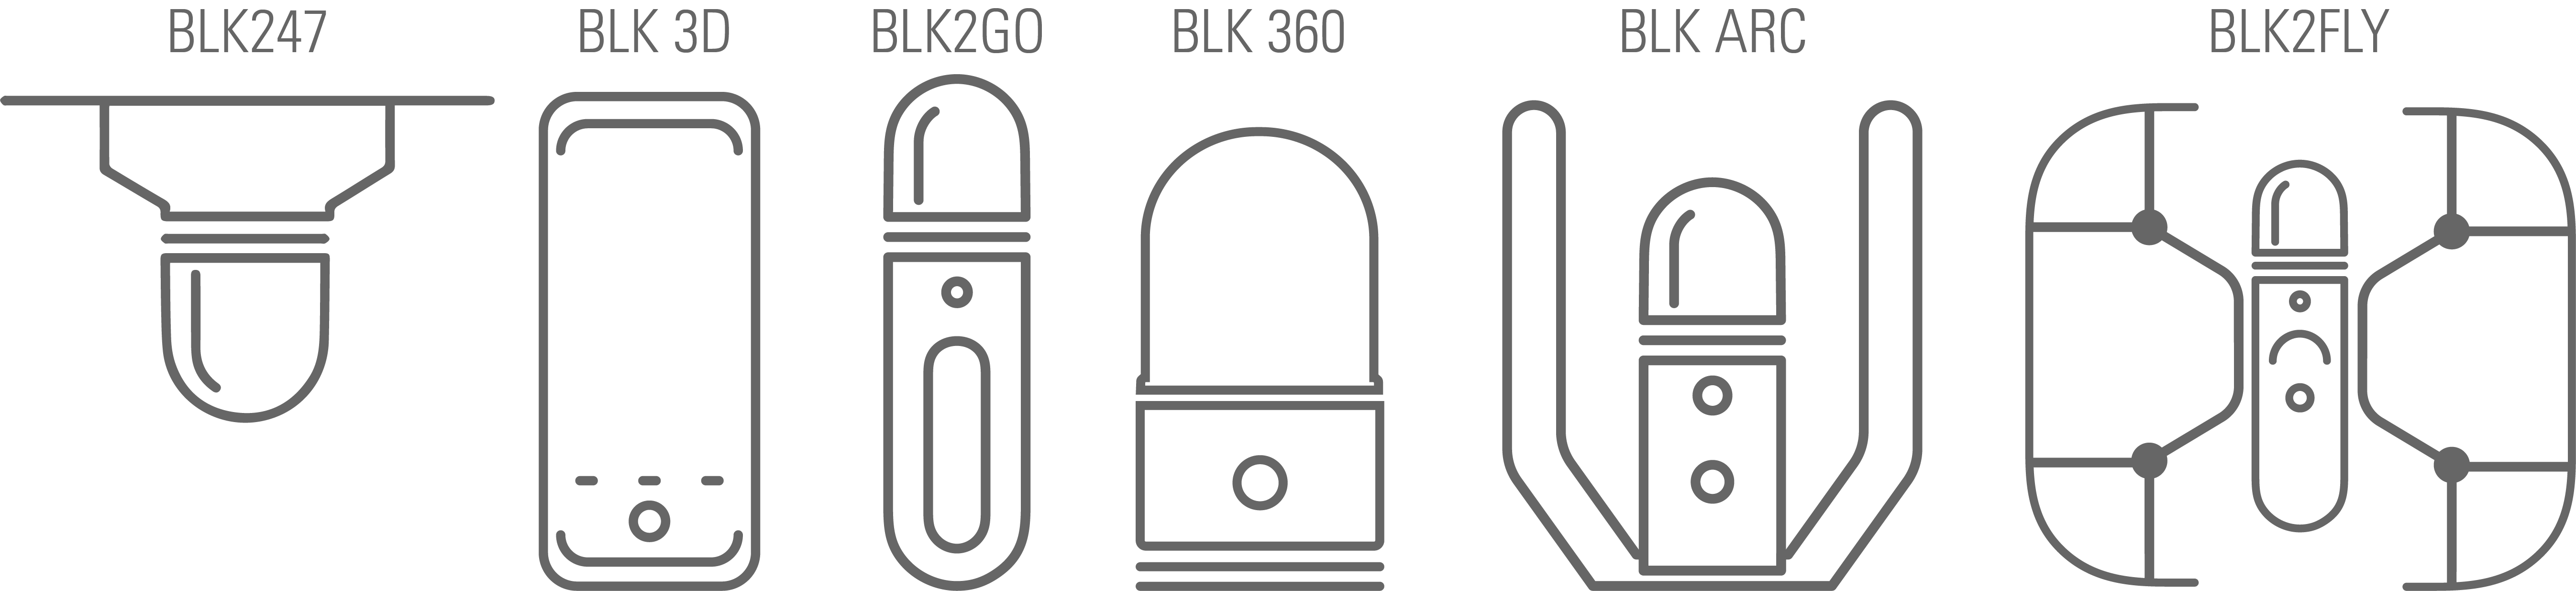 Diagramas vectoriales de productos BLK con etiquetas